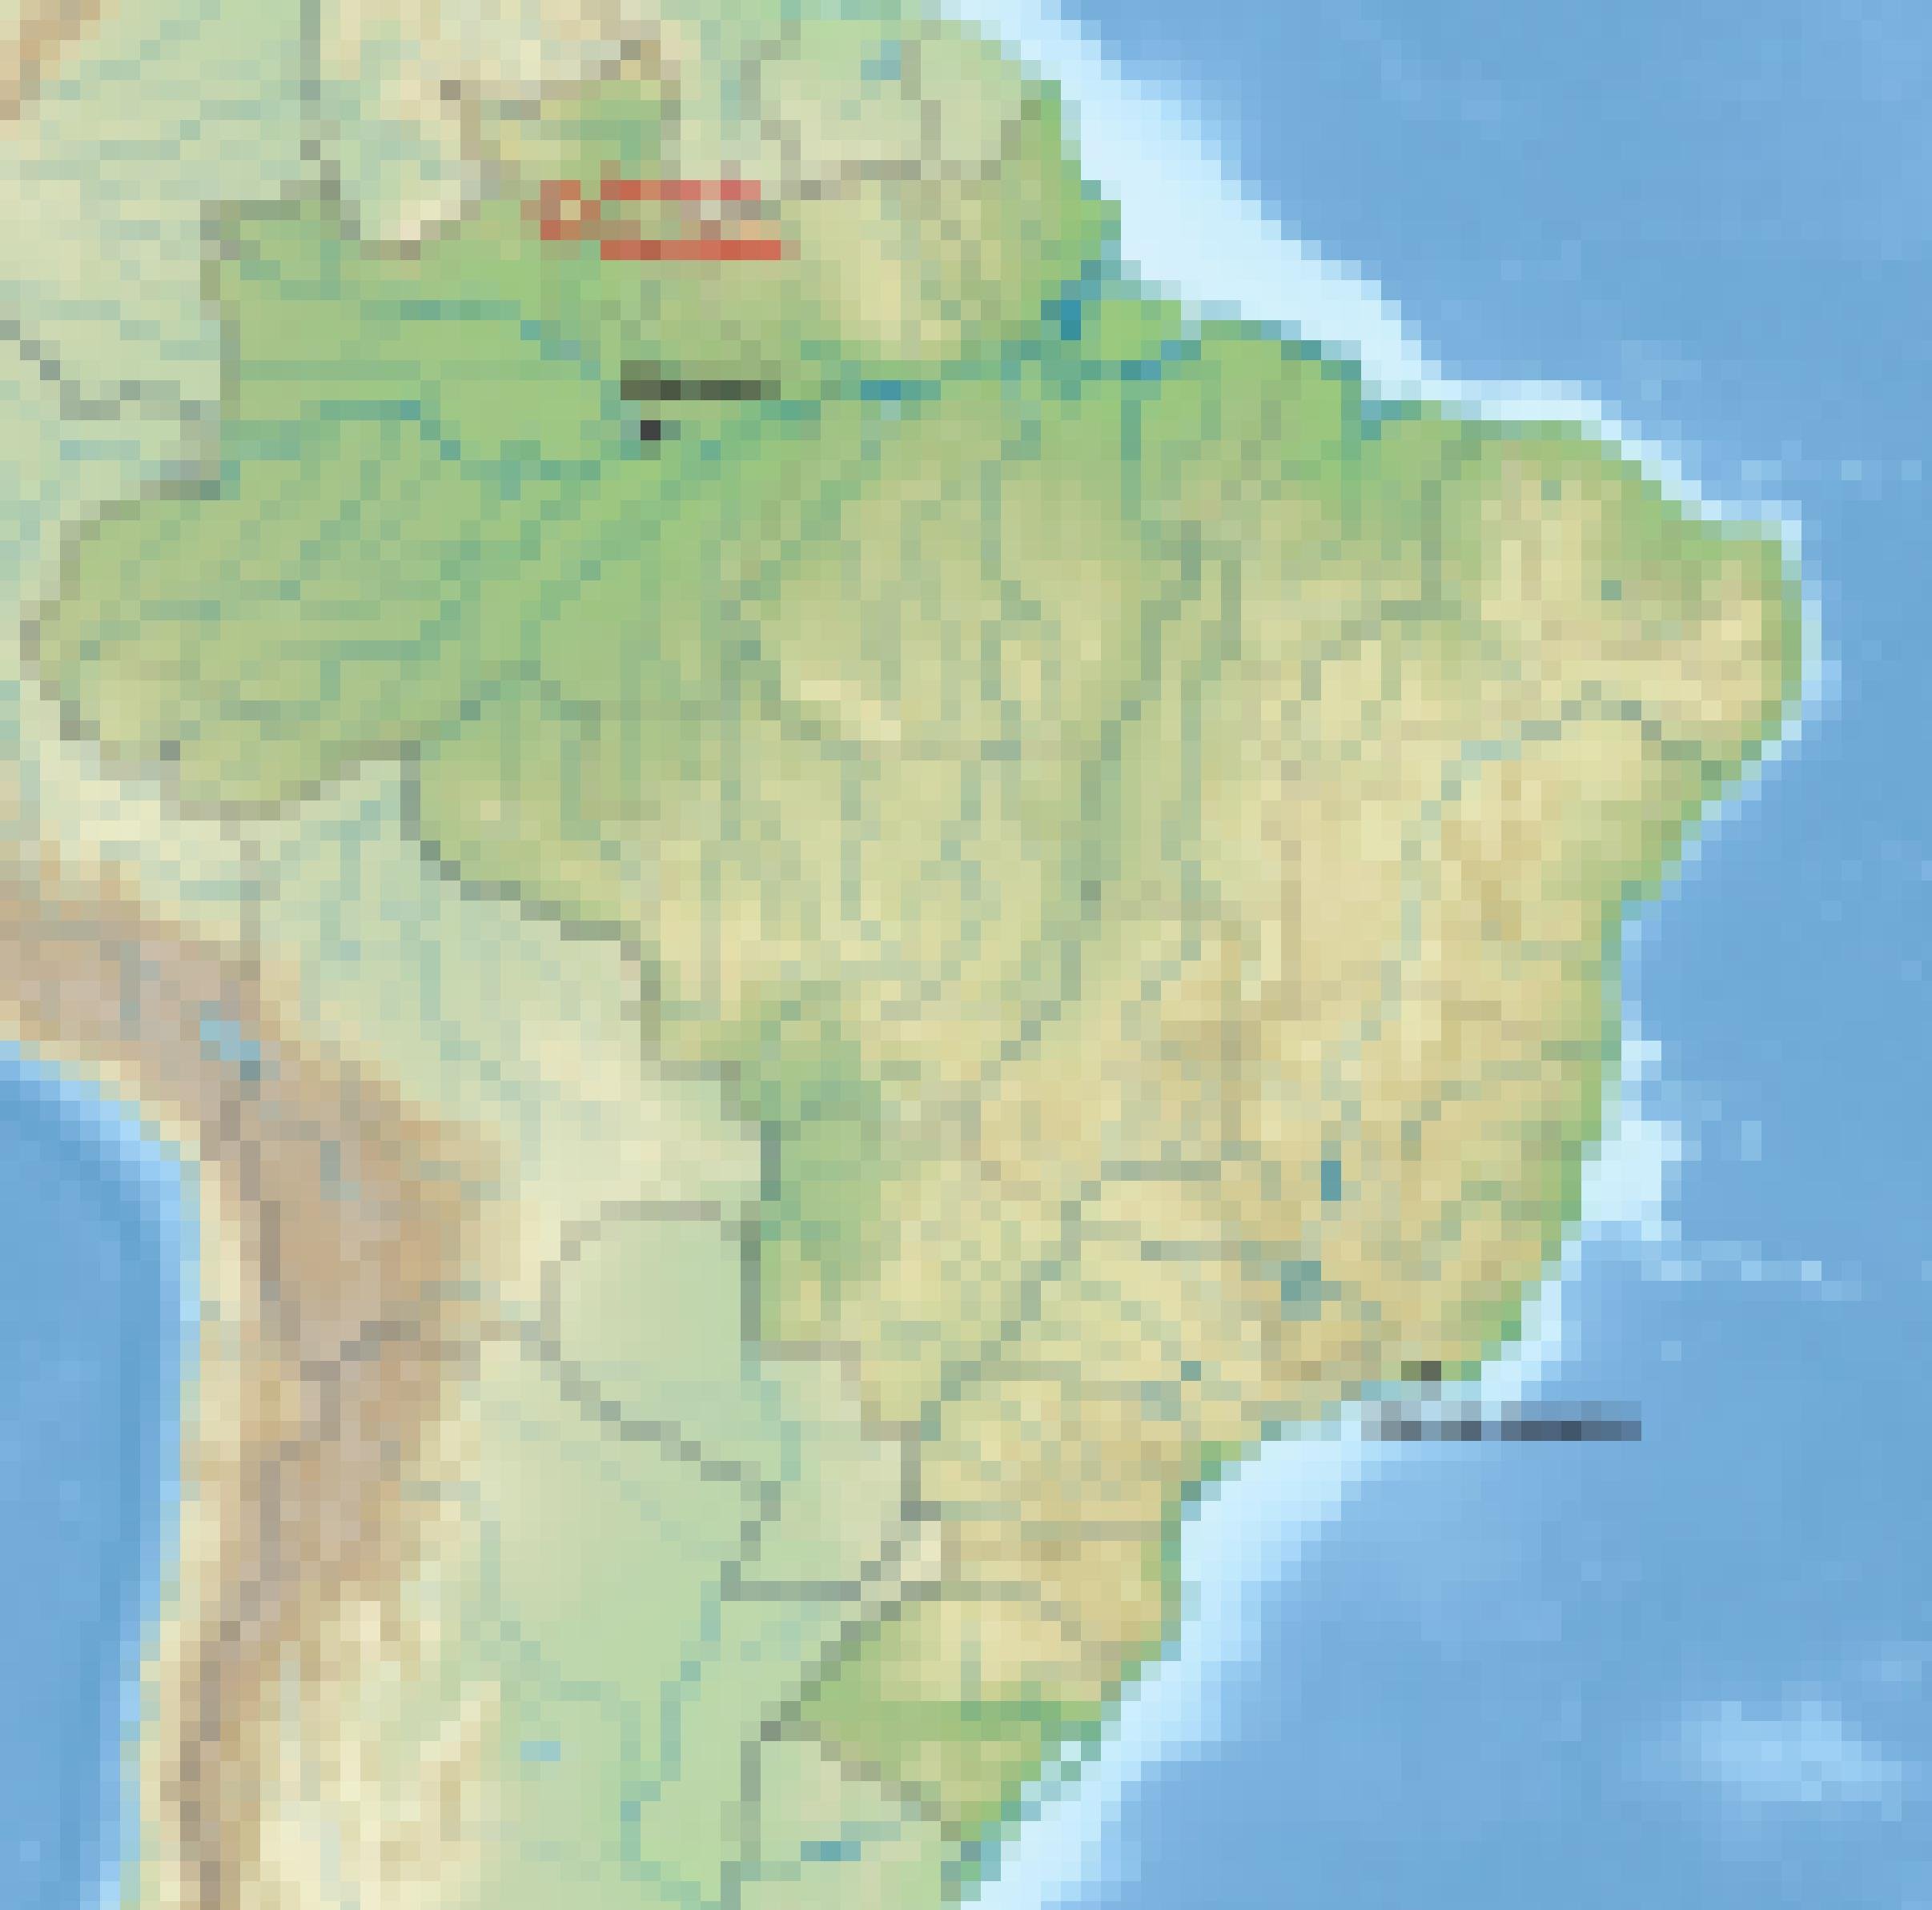 Die Serra da Mocidade ist eine Erhebung im nördlichen Teil des Amazonas-Gebiets.